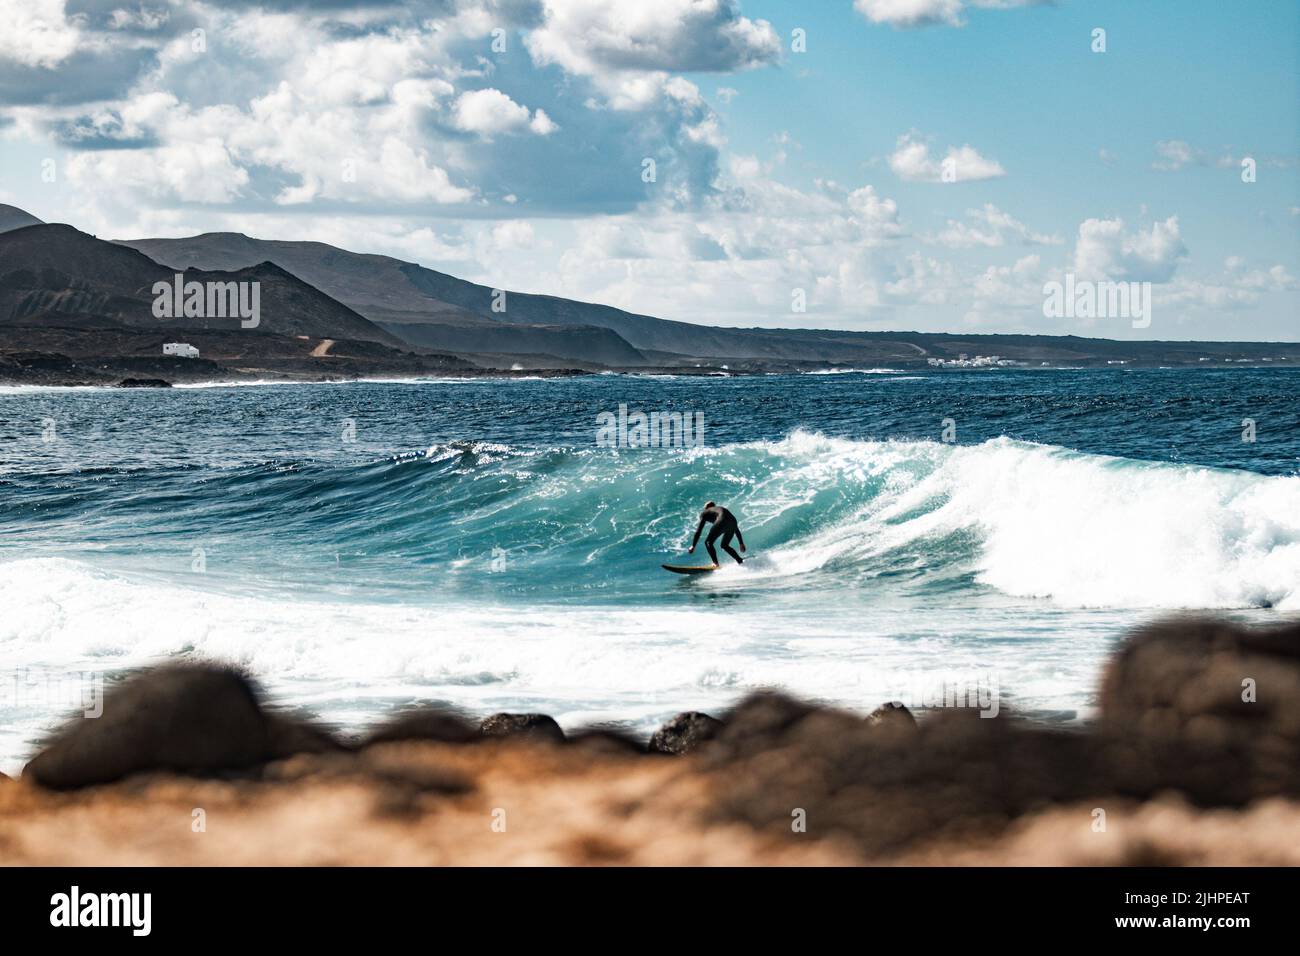 Costa salvaje y rocosa de surf spot La Santa Lanzarote, Islas Canarias, España. Surfista montando una gran ola en la bahía rocosa, la montaña del volcán en el fondo. Foto de stock